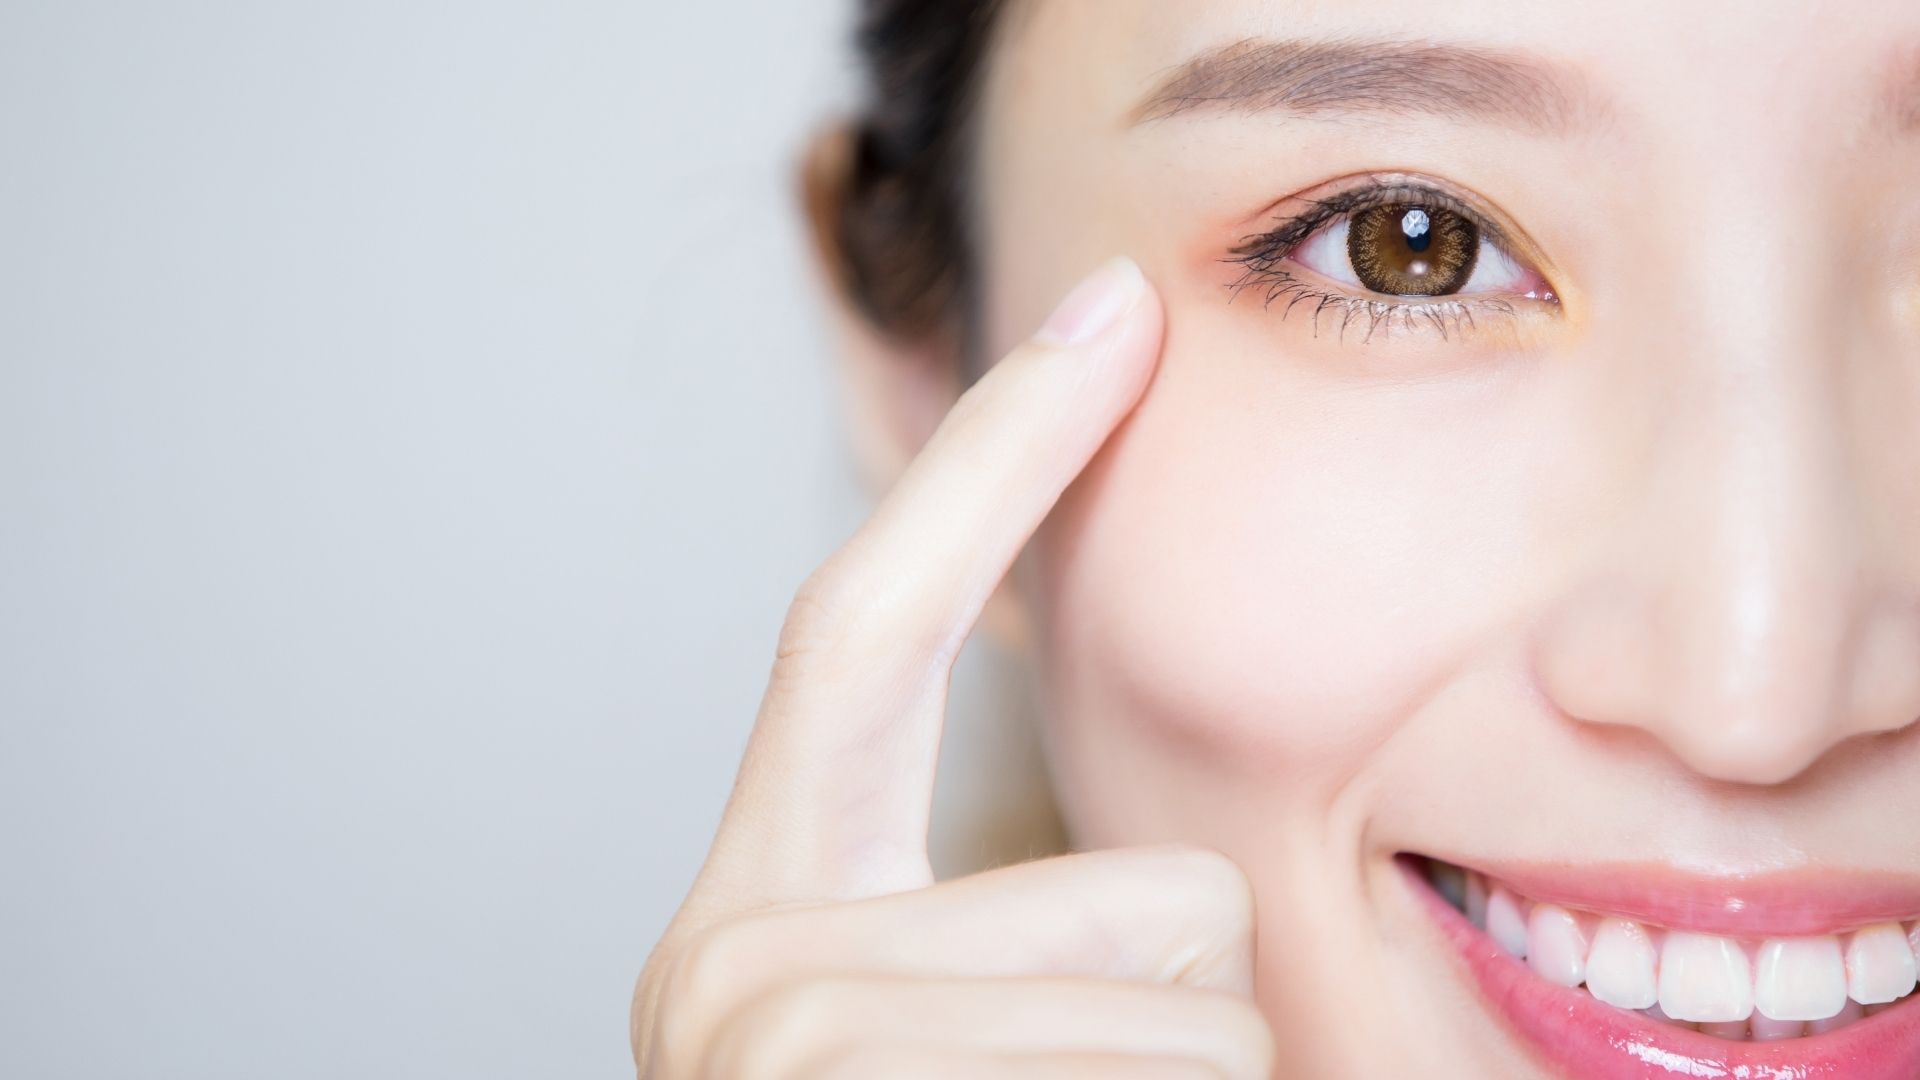 adult eye health tips